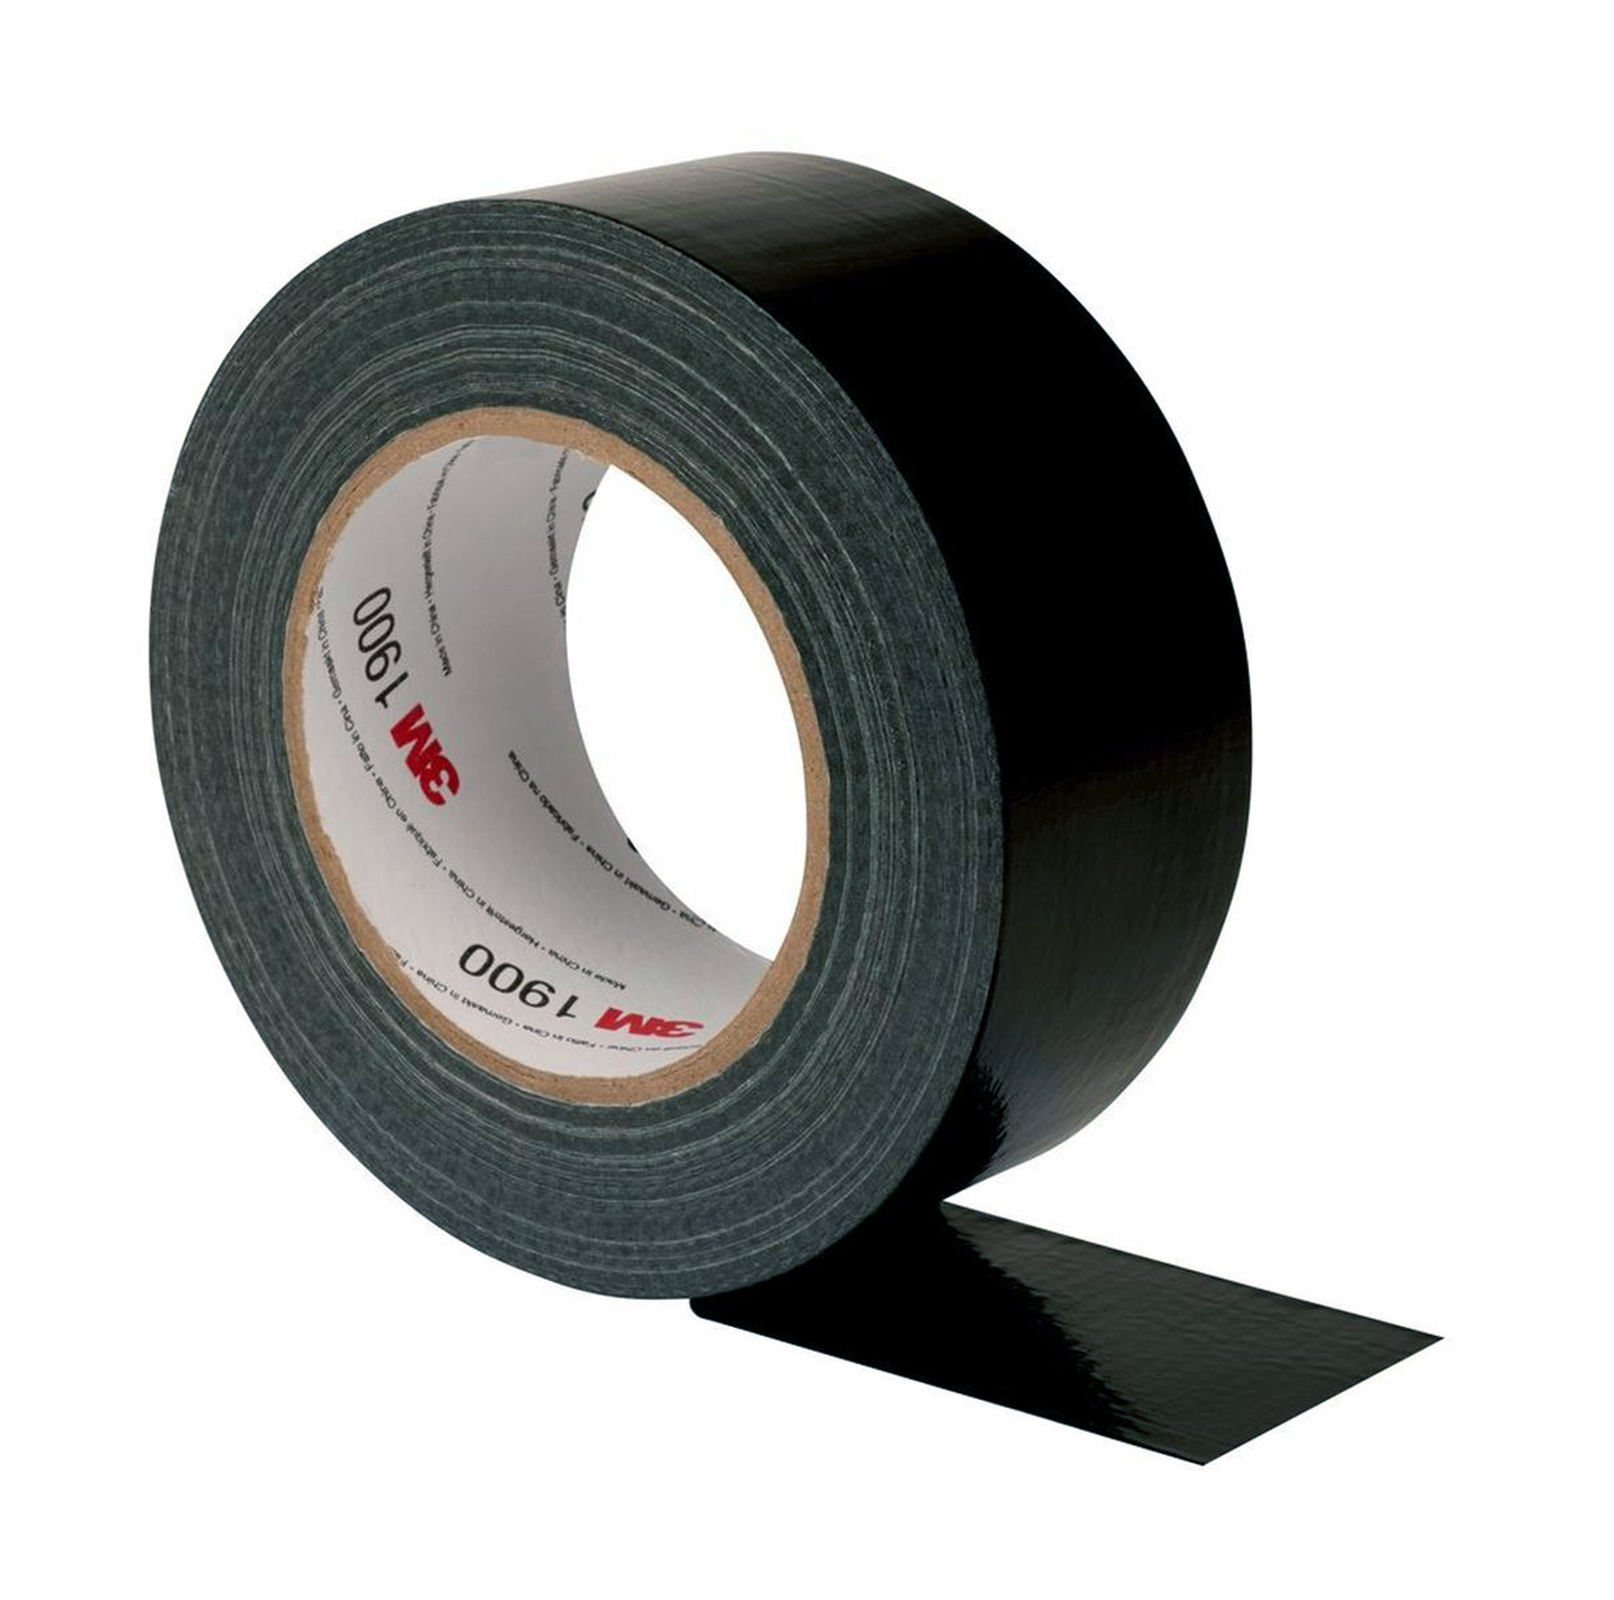 3M Economy duct tape 1900 Black, 50 m x 50 mm armor tape repair tape